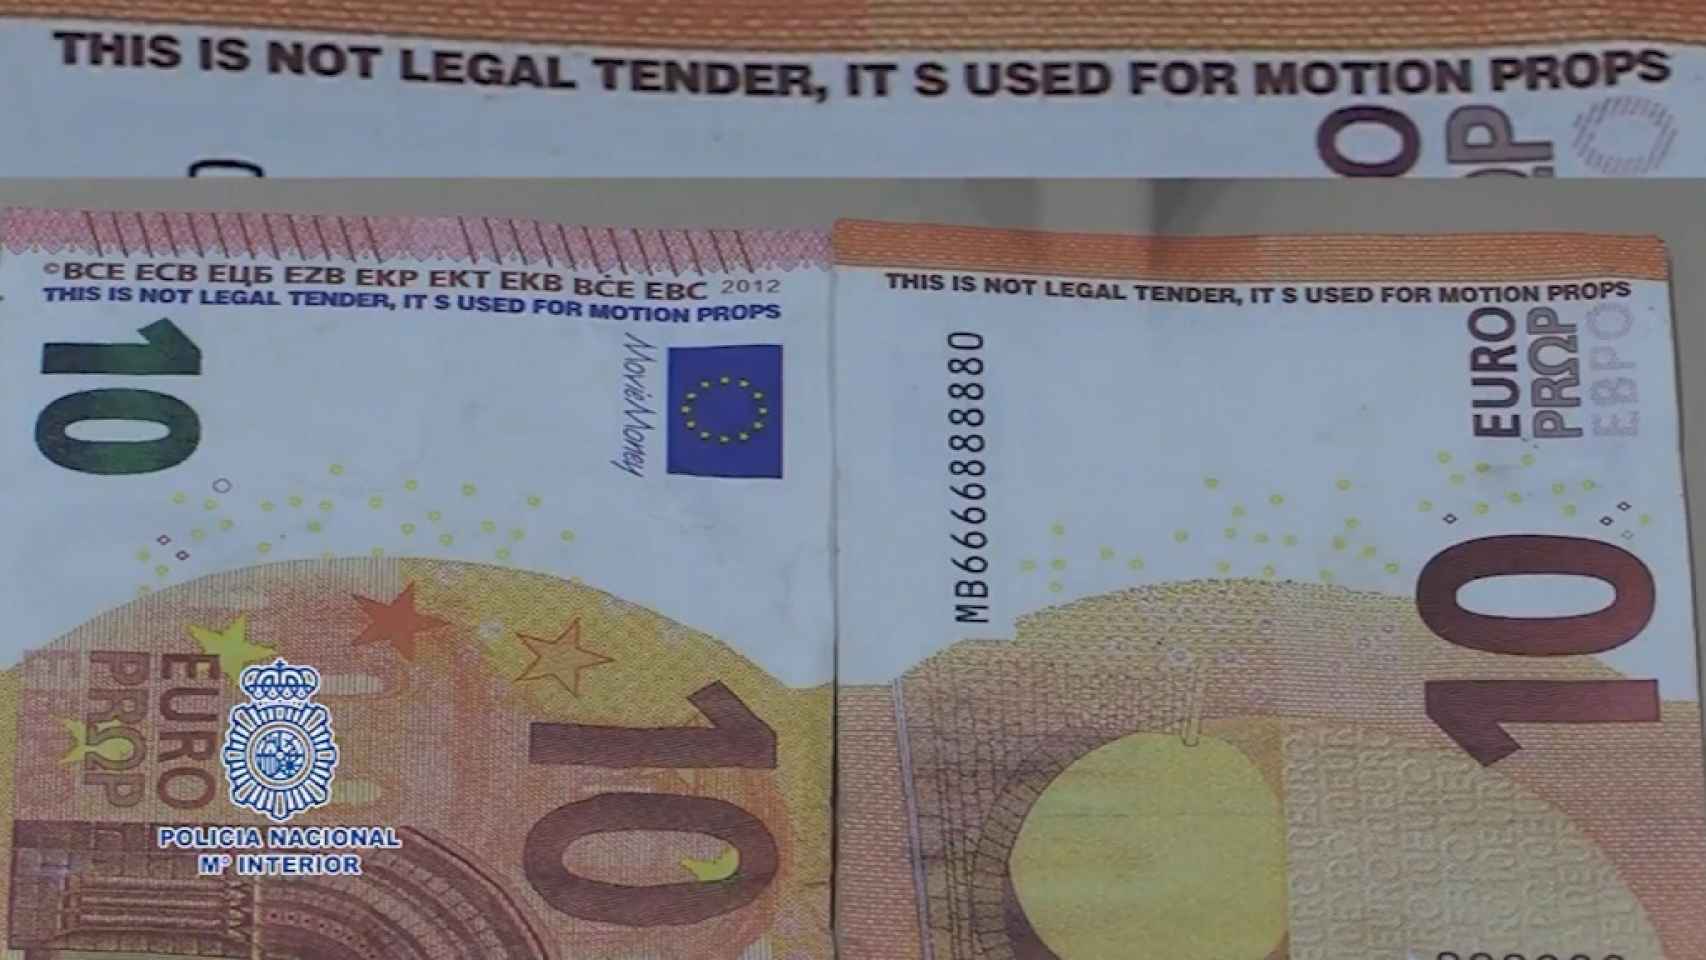 Oleada de billetes falsos de 10 euros: la clave para detectarlos